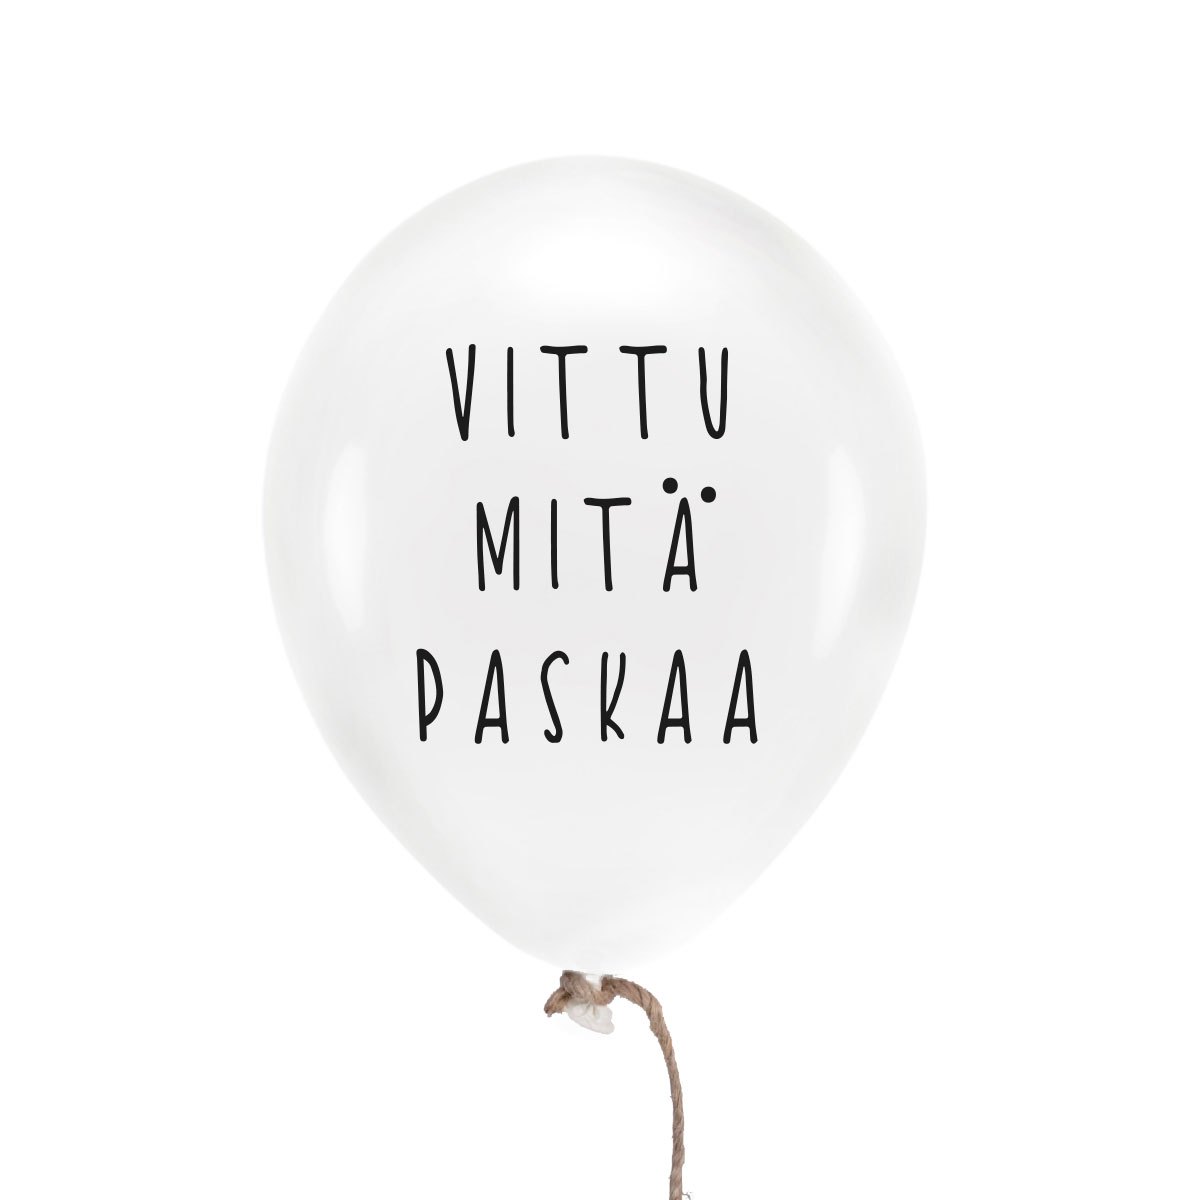 Vittu mitä paskaa ilmapallo Paskakauppa